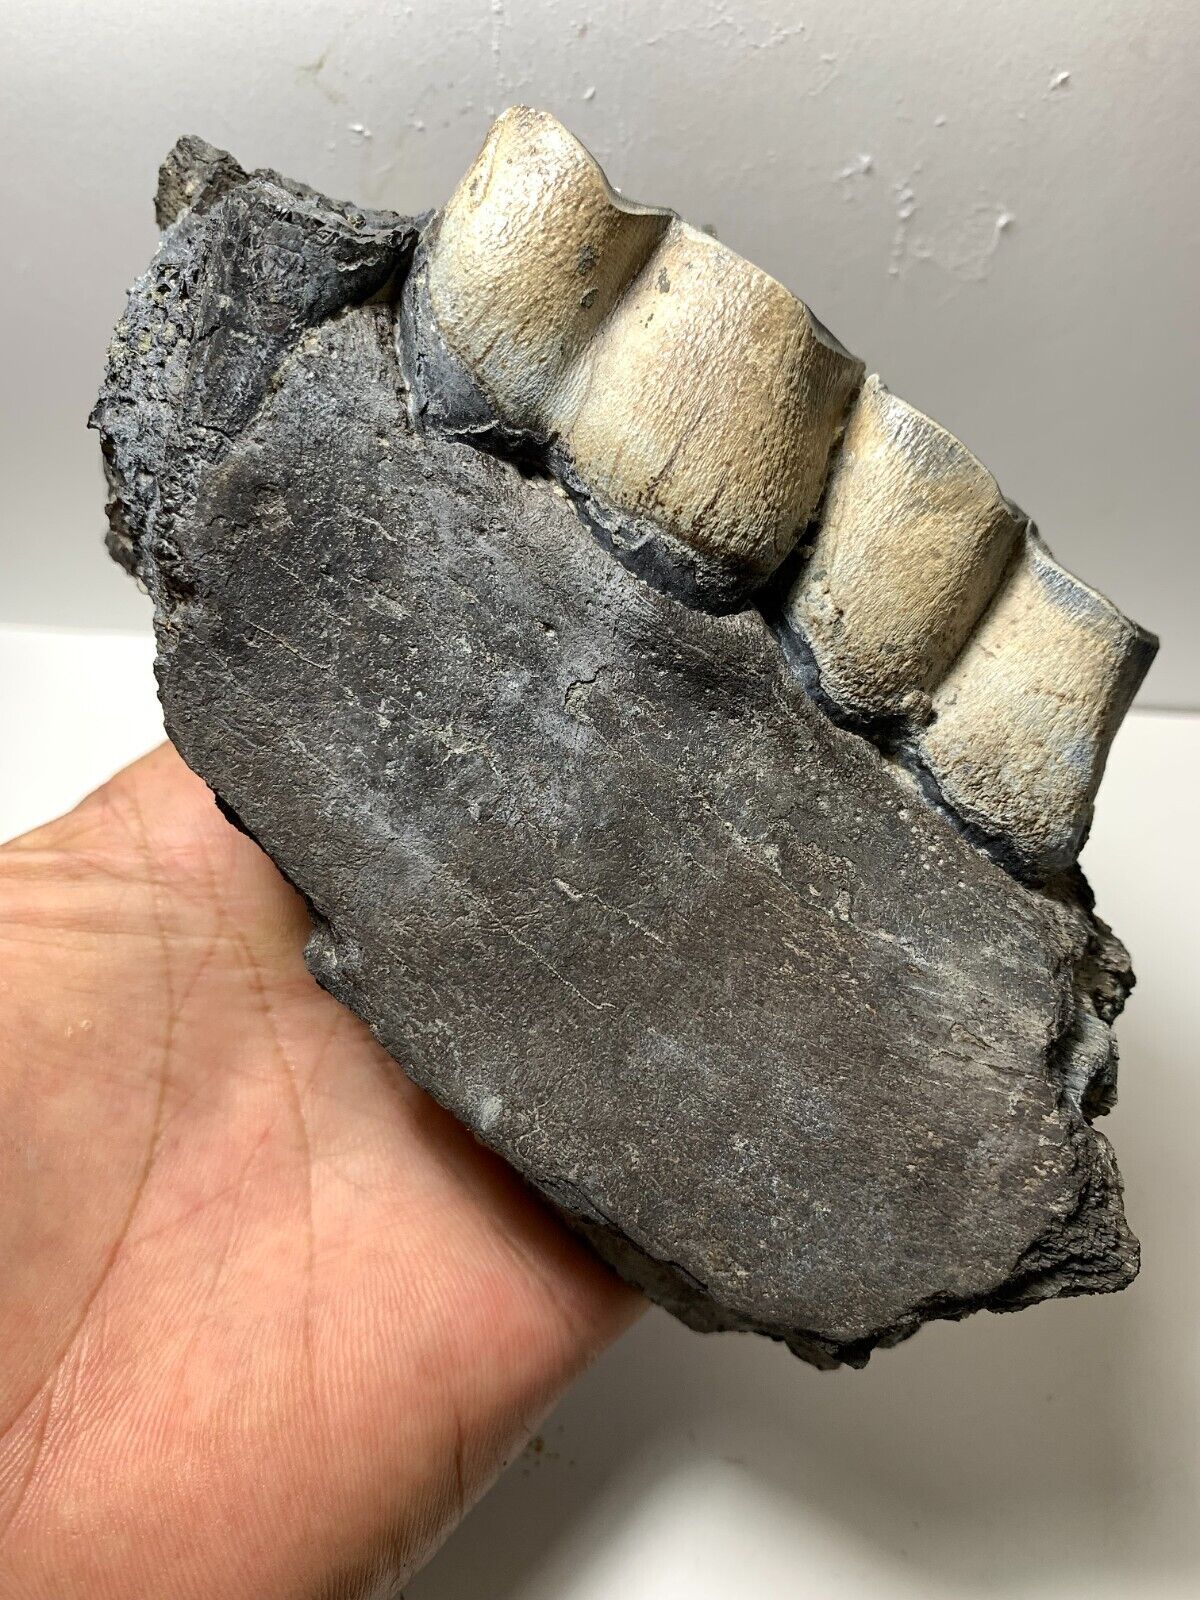 Colorful Aceratherium Primitive fossil jaw - tooth Rare Amazing genuine